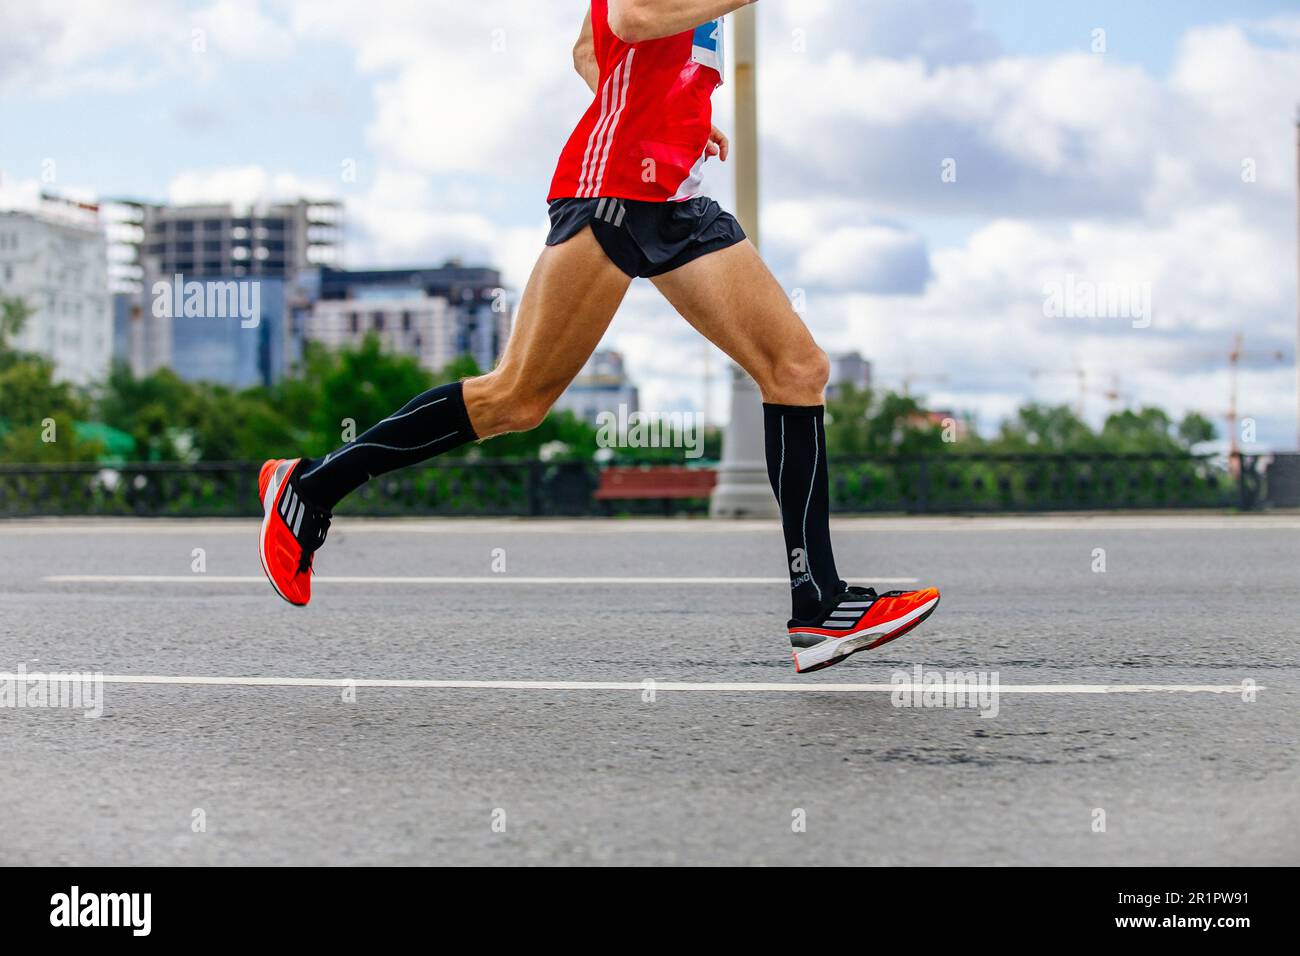 zapatillas de correr, pantalones cortos y carreras singlet, piernas corredor hombre correr maratón en la ciudad, carrera deportiva de Fotografía de Alamy